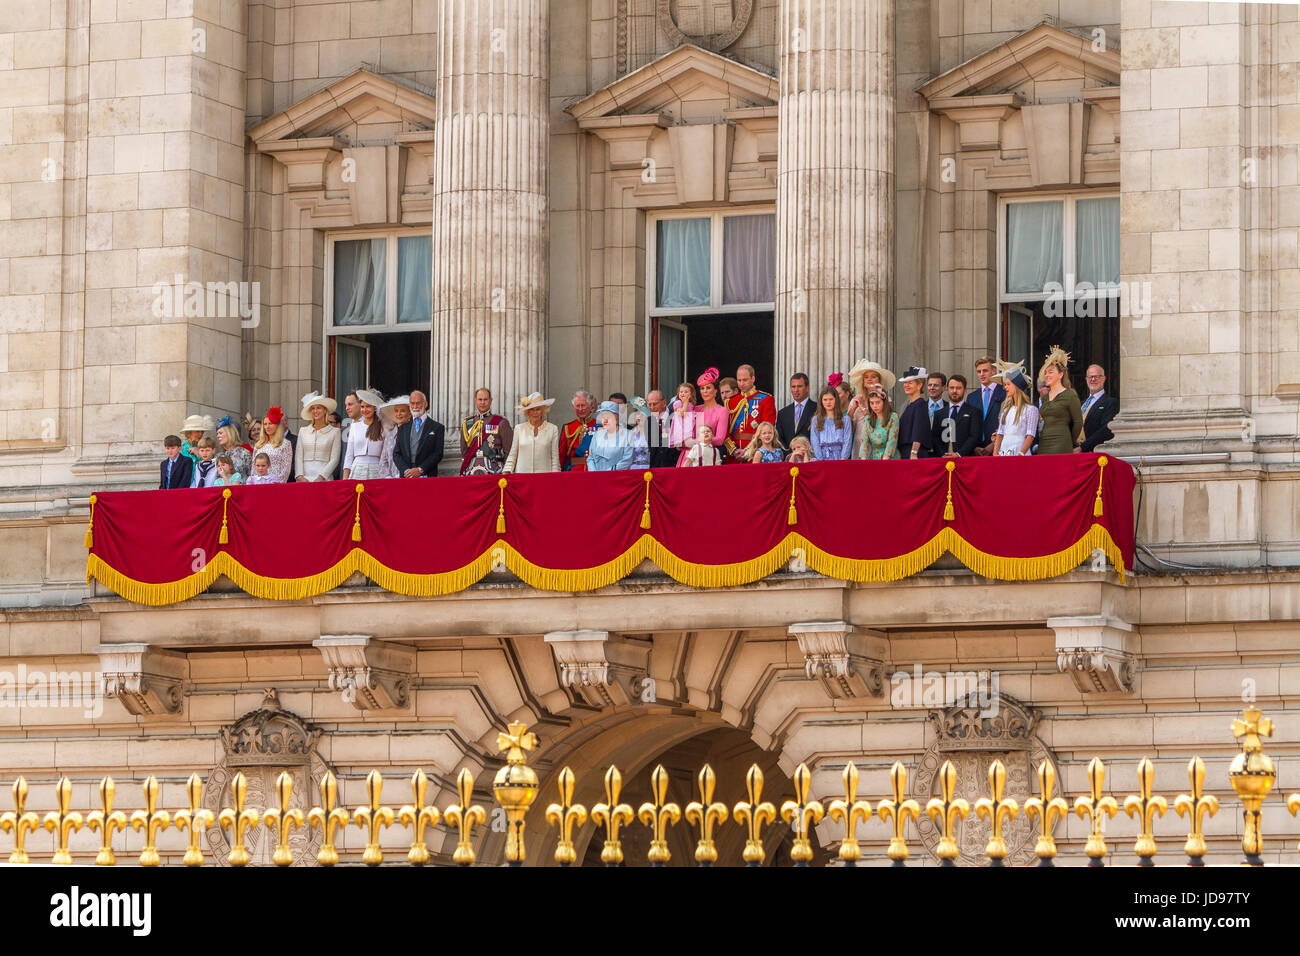 La Reine et les membres de la famille royale se réunissent sur le Buckingham Palace Balcony à la suite de la Trooping The Color Parade, Londres, Royaume-Uni, 2017 Banque D'Images